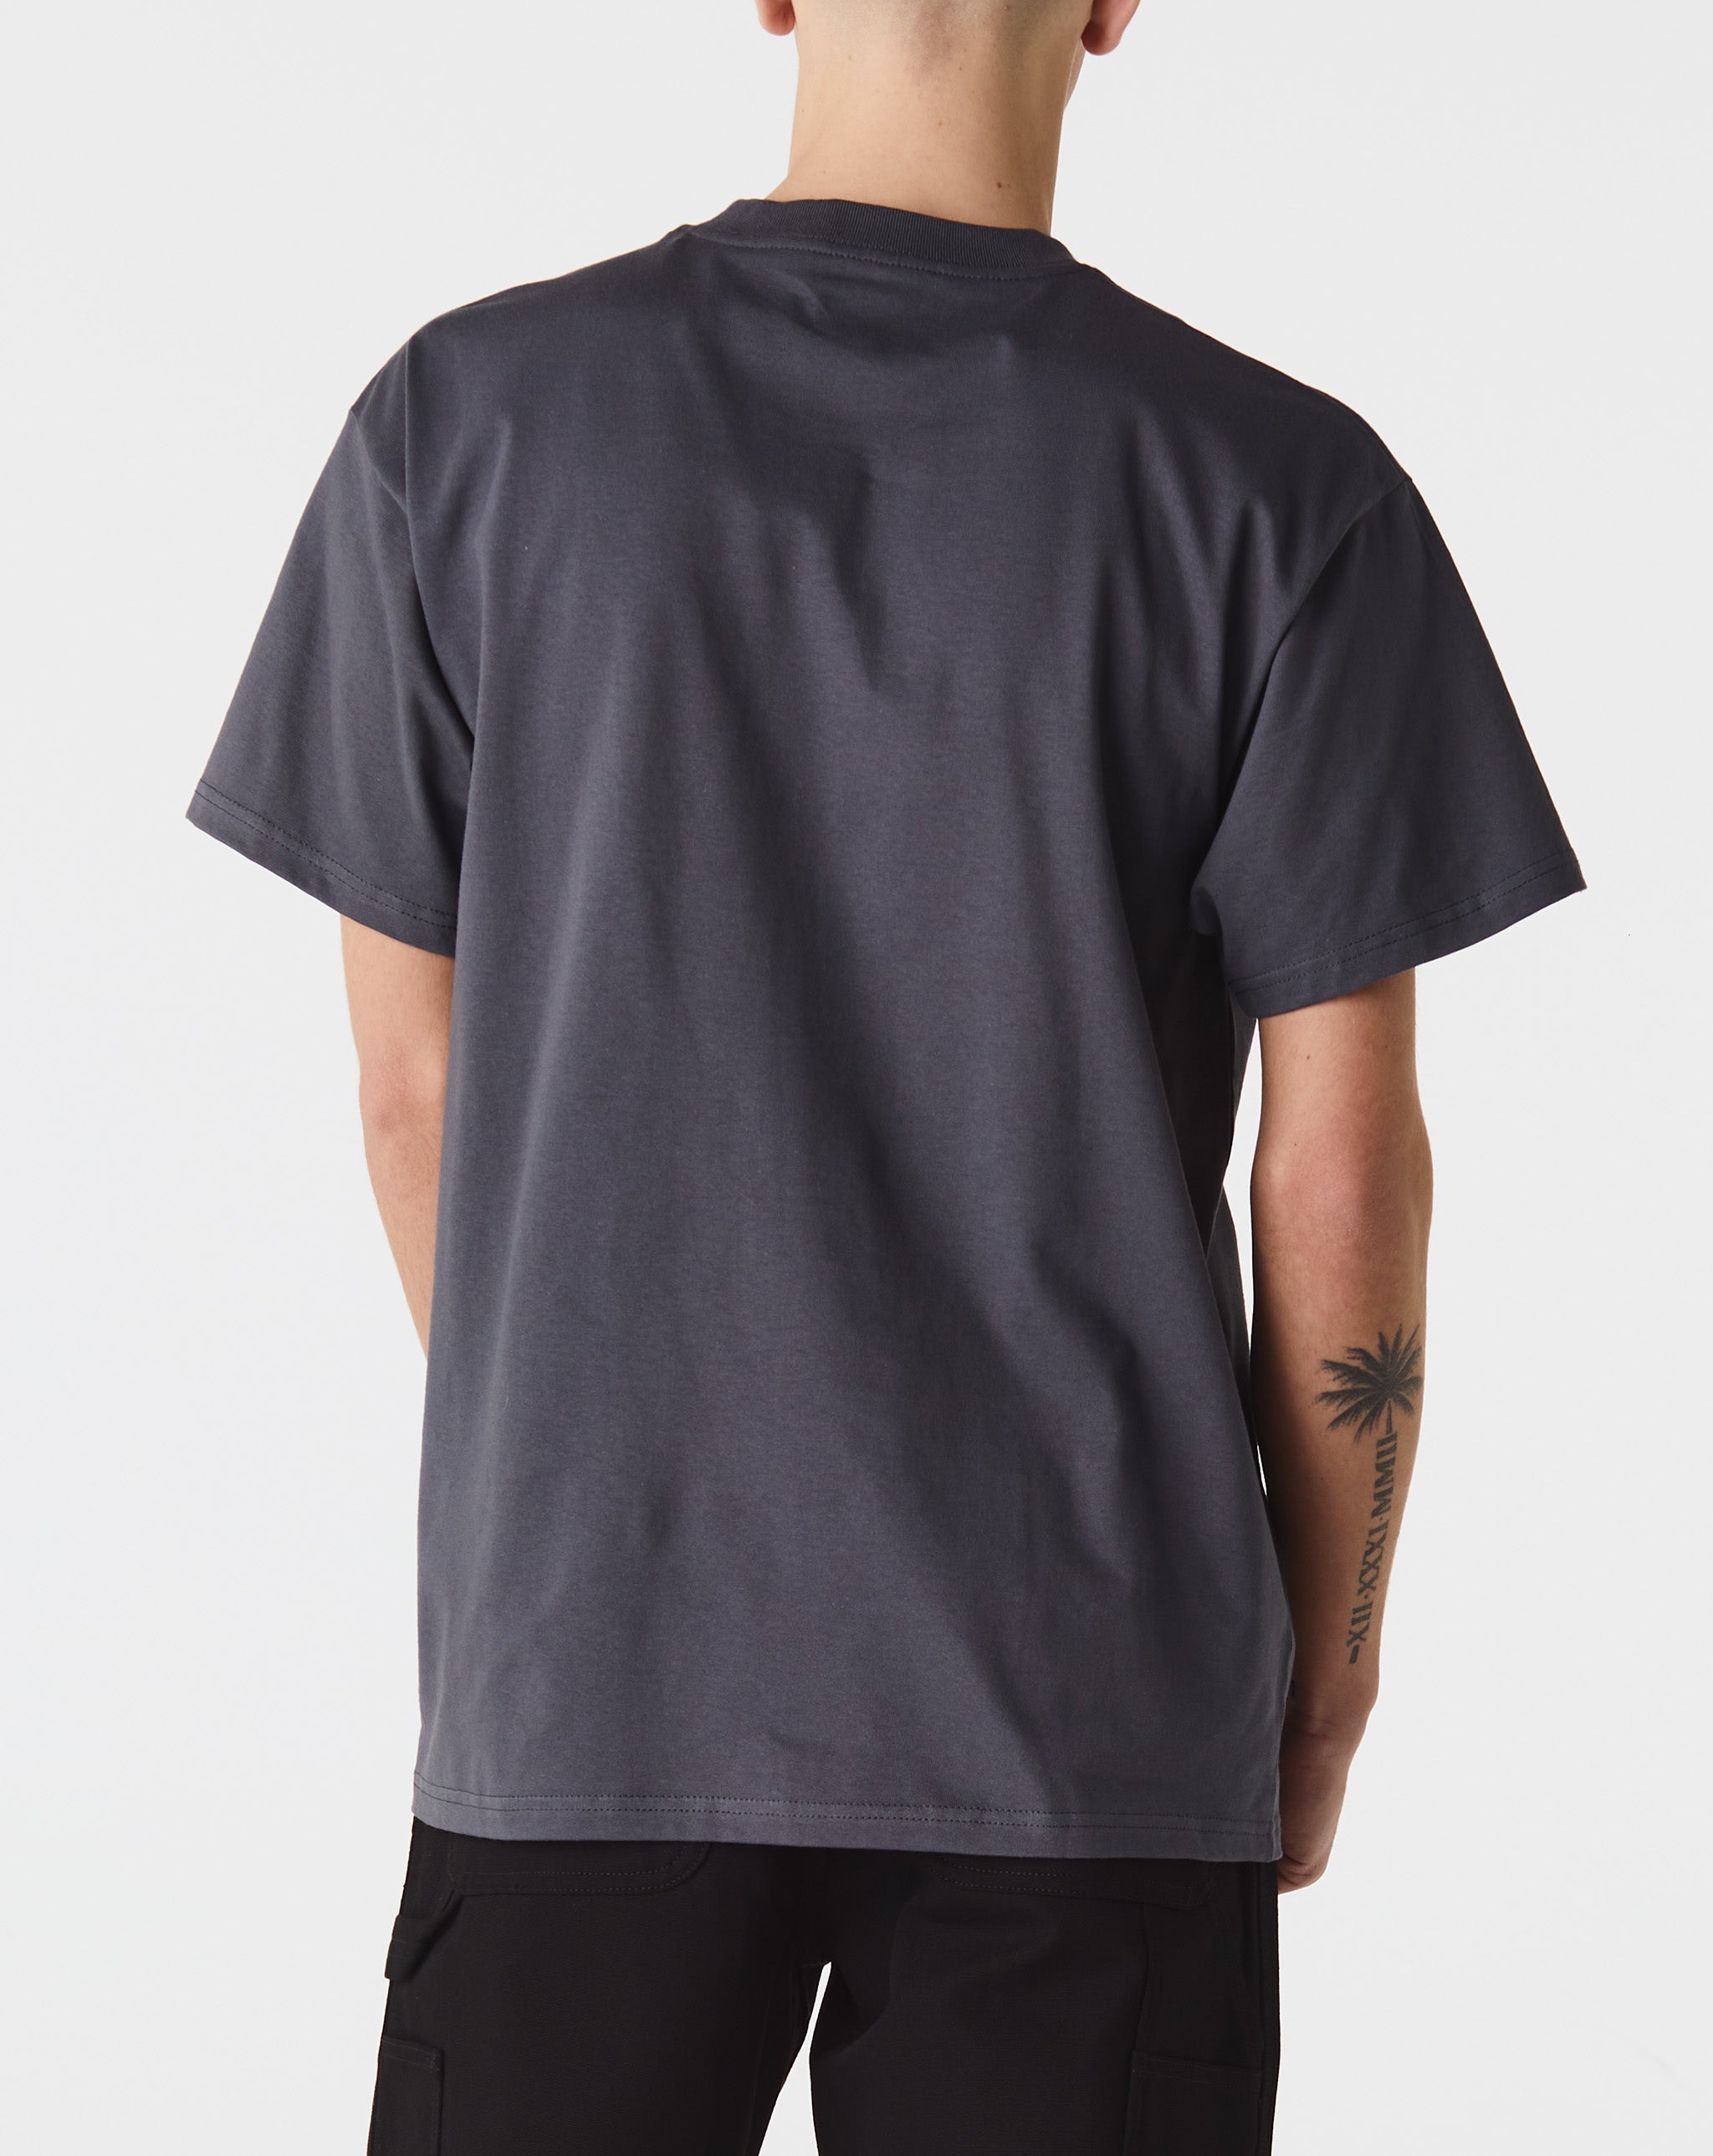 Carhartt WIP Pagan T-Shirt  - Cheap Cerbe Jordan outlet